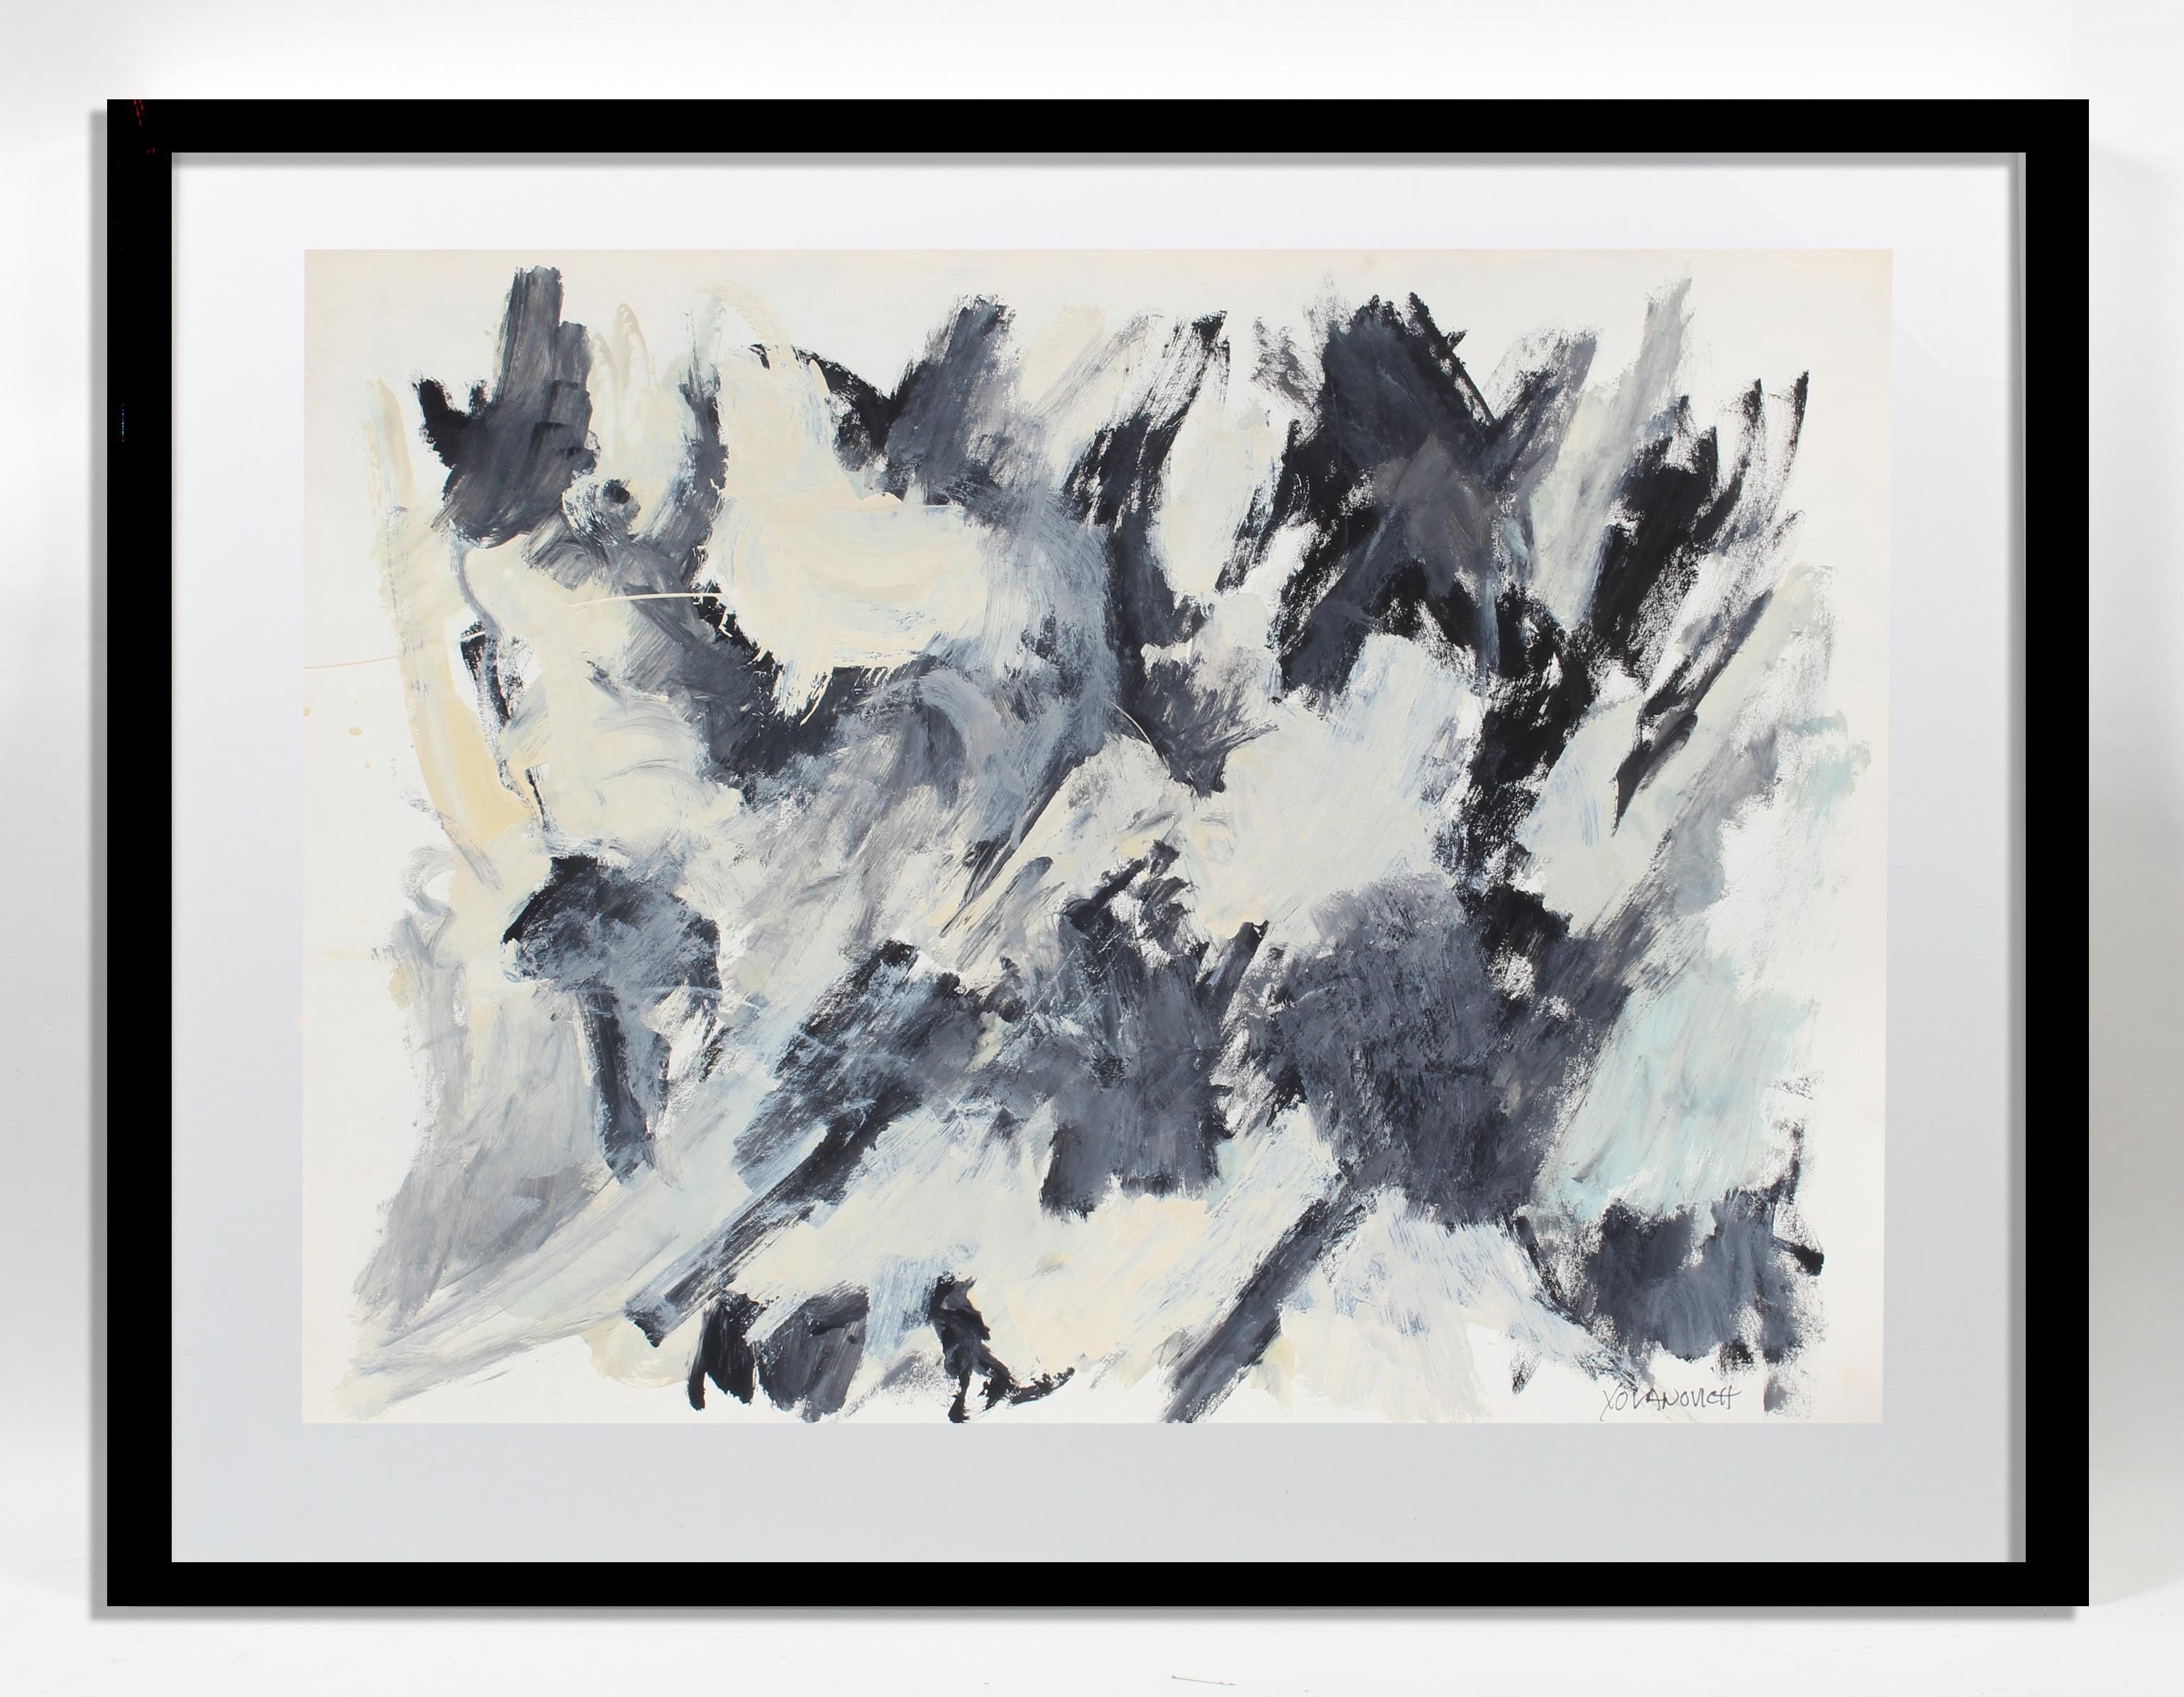 Schwarz-weißes abstraktes expressionistisches Gemälde des amerikanischen Künstlers Toma Tovanovich (1931-2016) aus der Jahrhundertmitte.   Um 1960, gerahmt, signiert Yovanovich, rechts unten. 

Tovanovichs Werke befinden sich in vielen öffentlichen